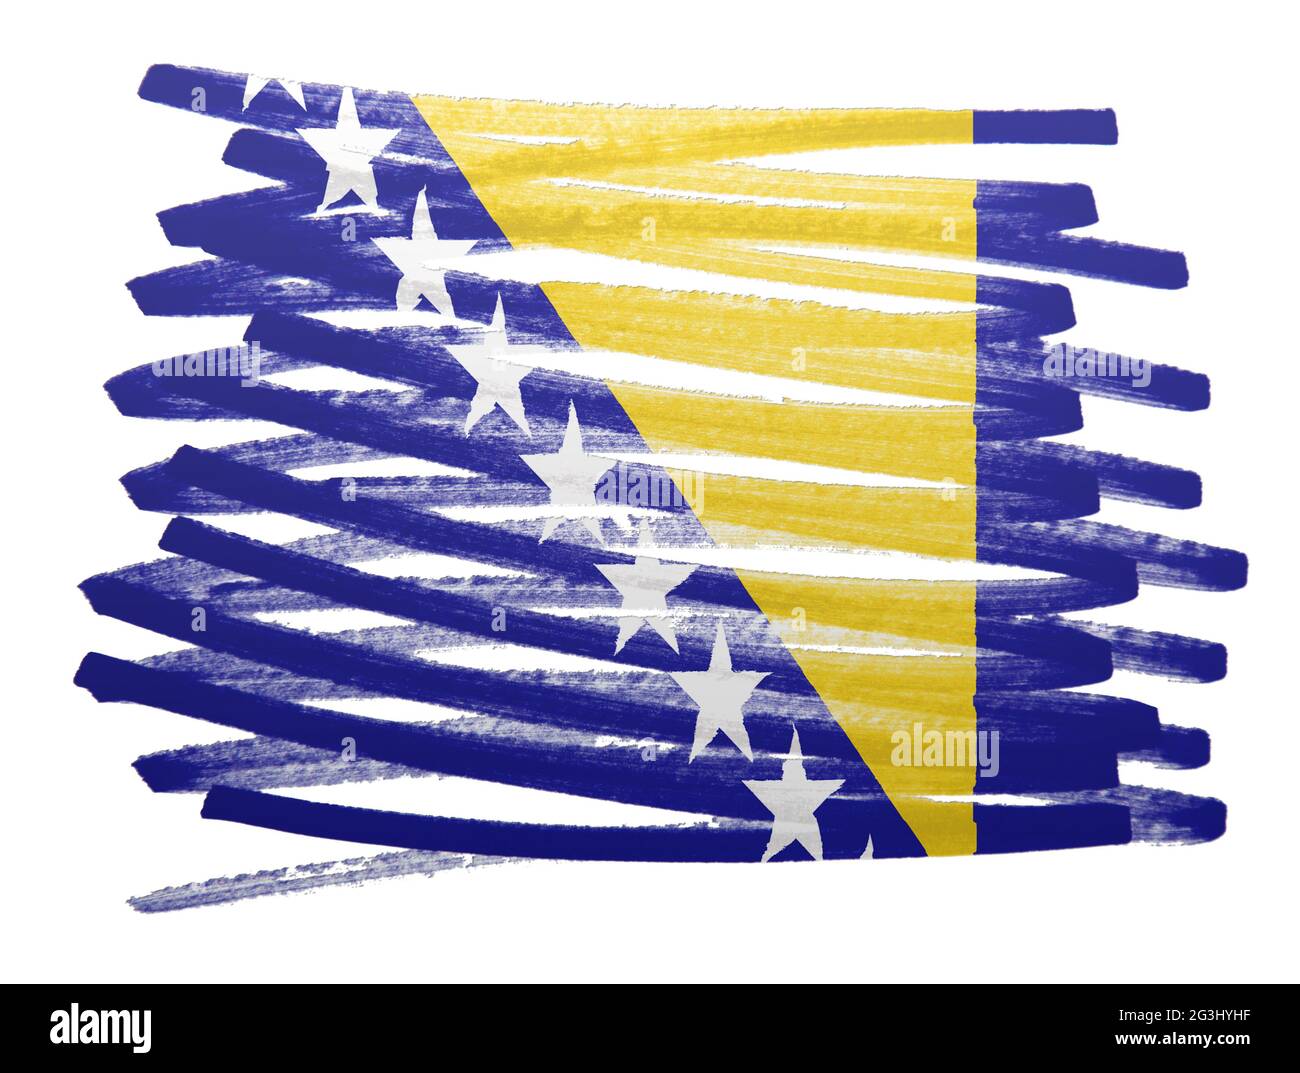 Flag illustration - Bosnia Herzegovina Stock Photo